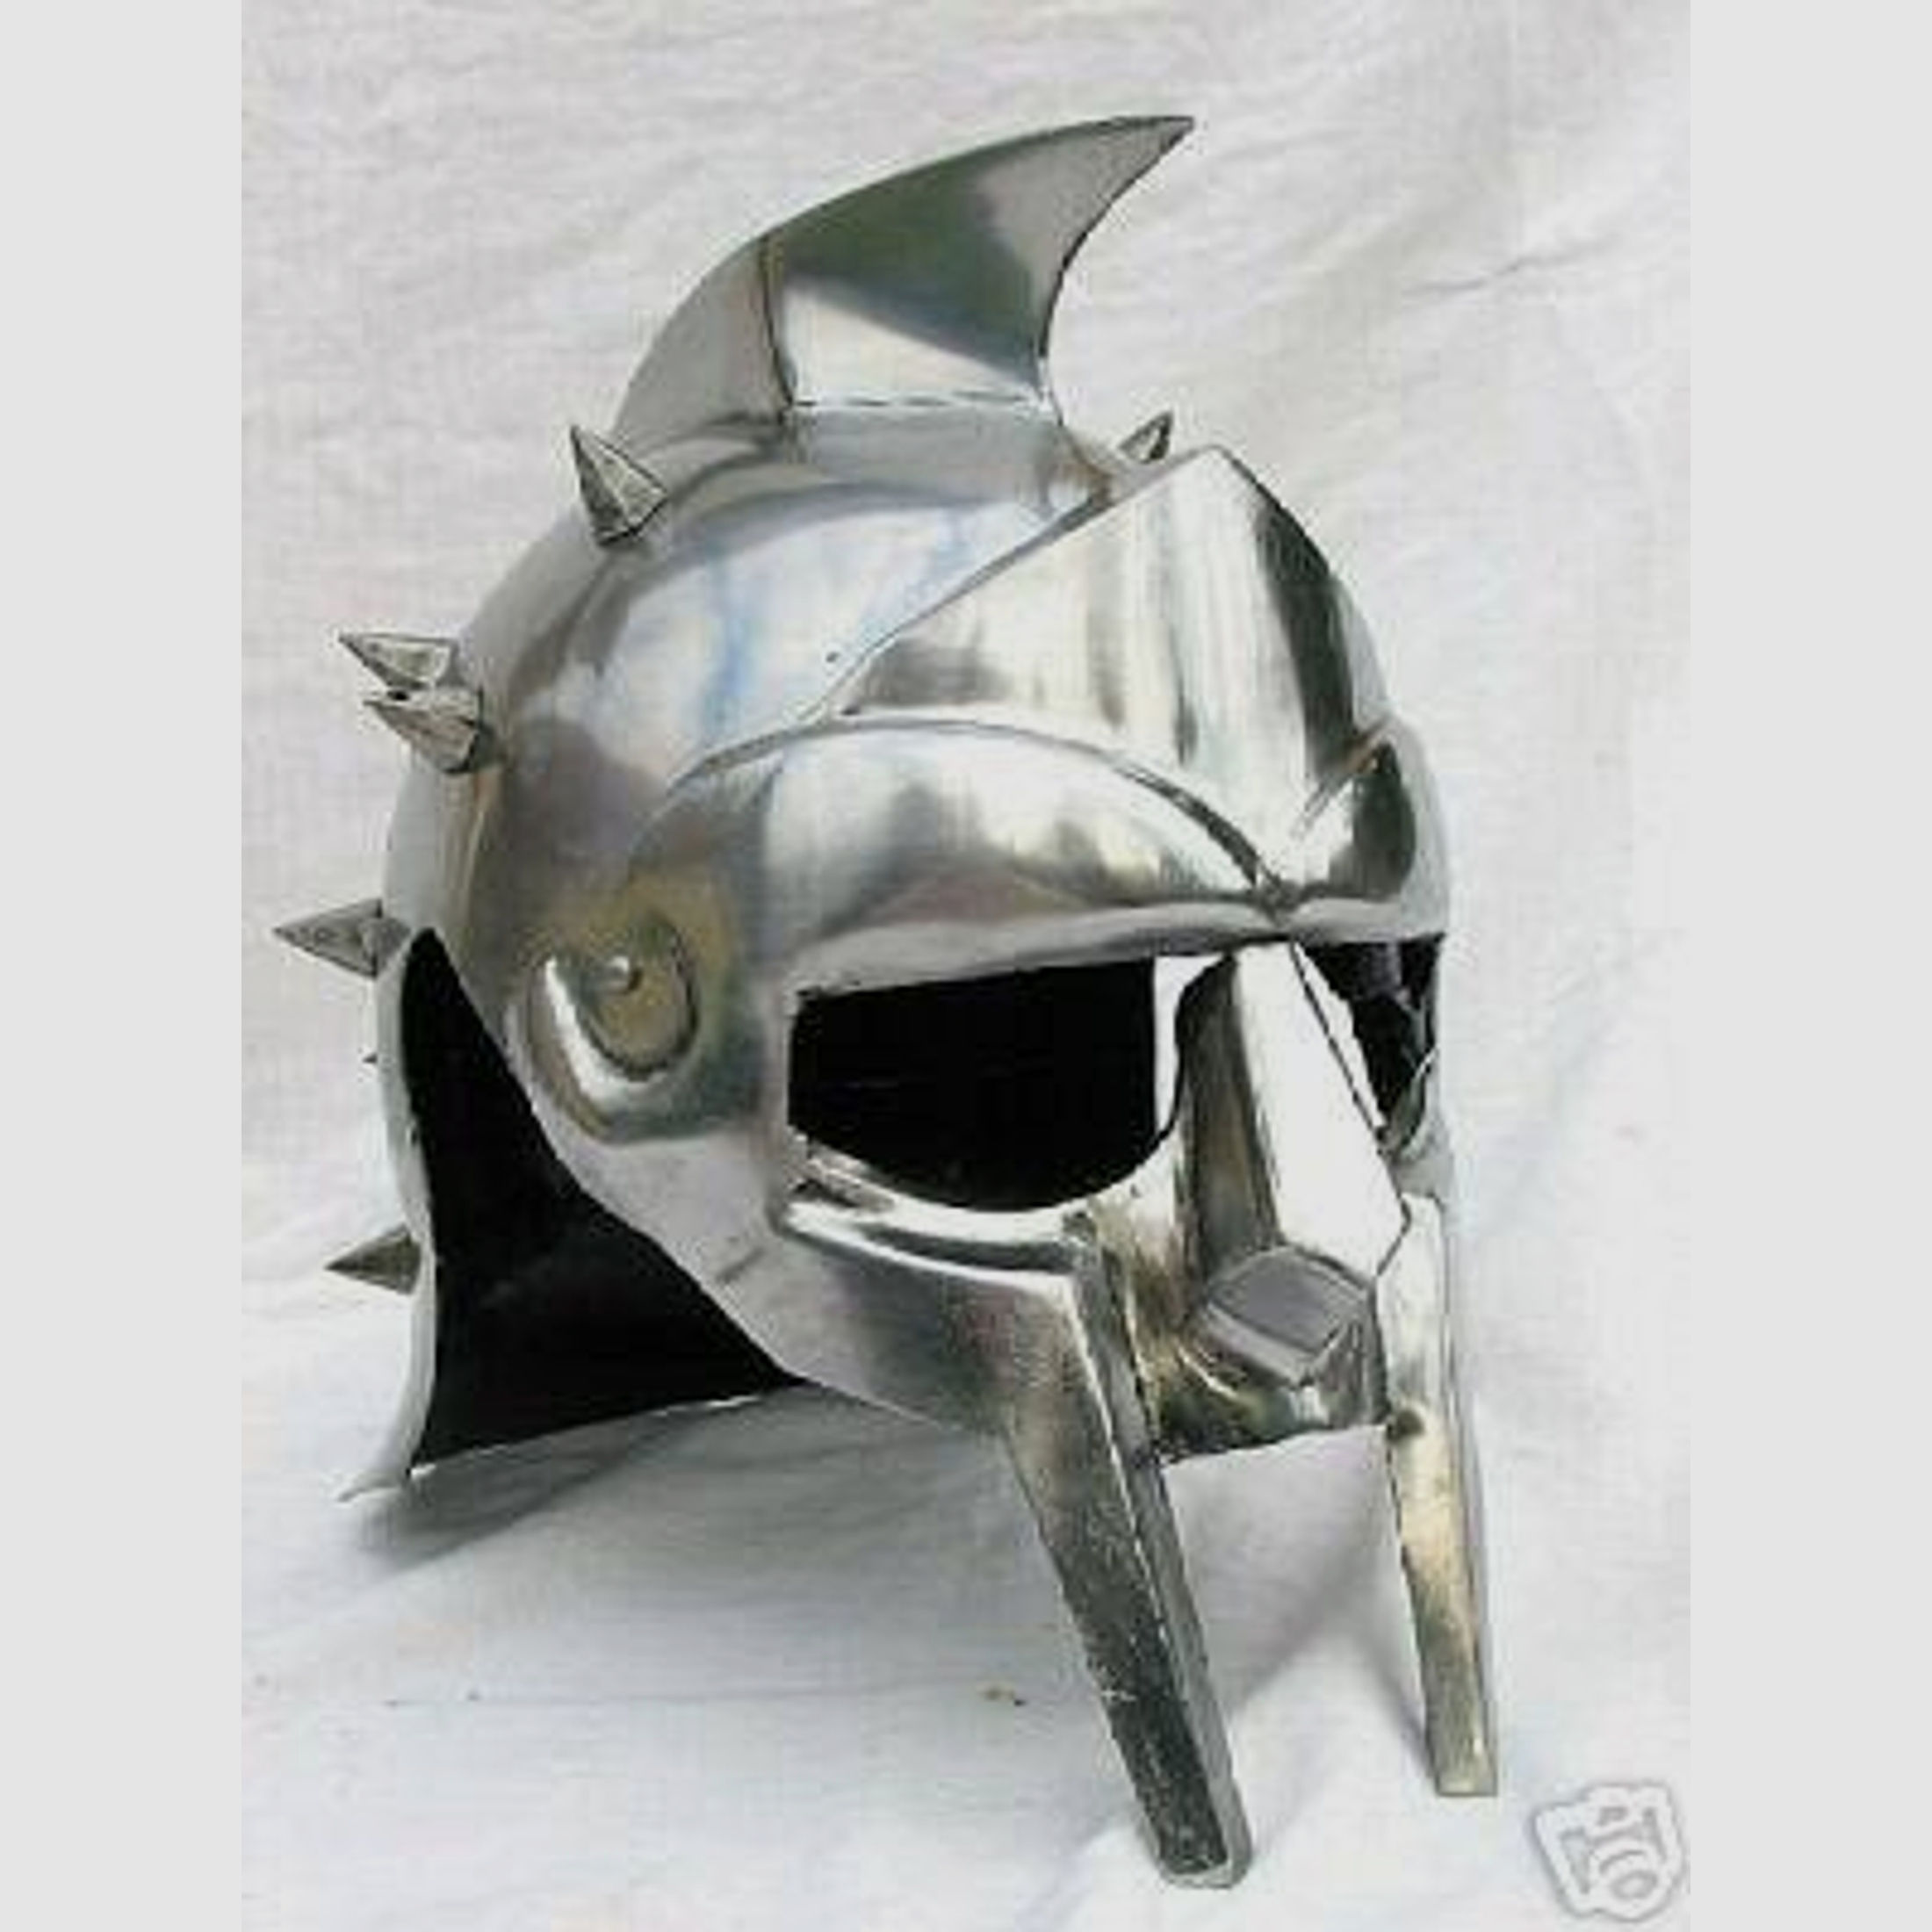 Gladiator Helm aus Rüstungsstahl mit Wangenschutz